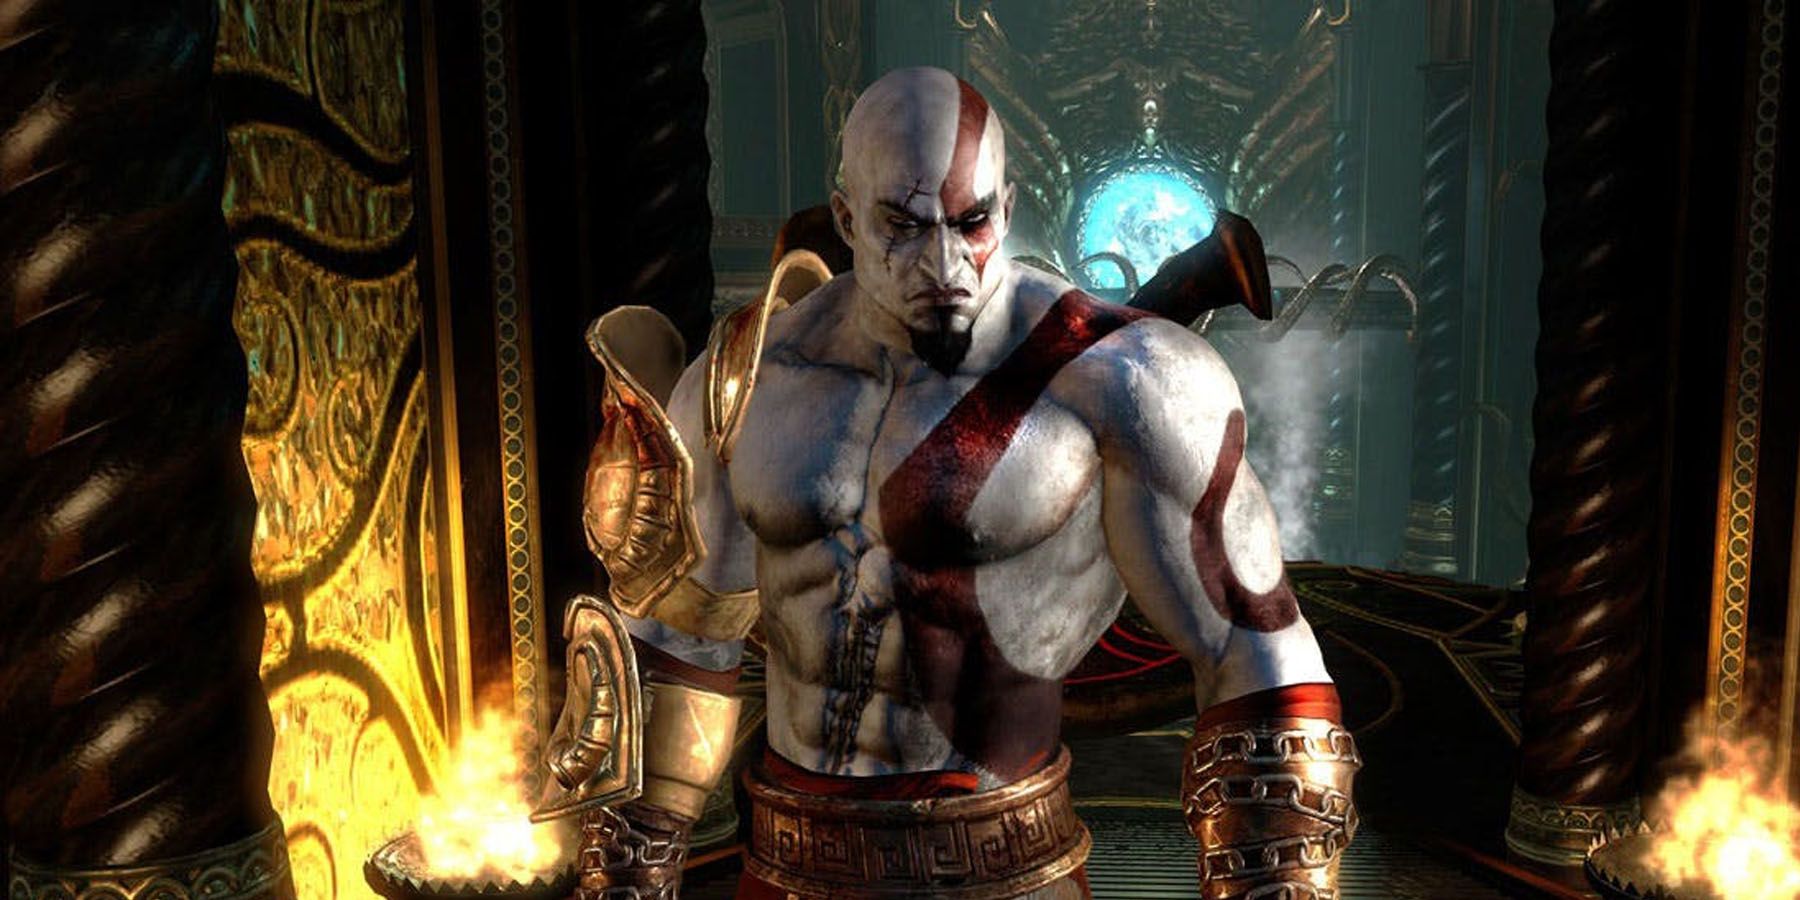 A screenshot of Kratos from God of War 3.